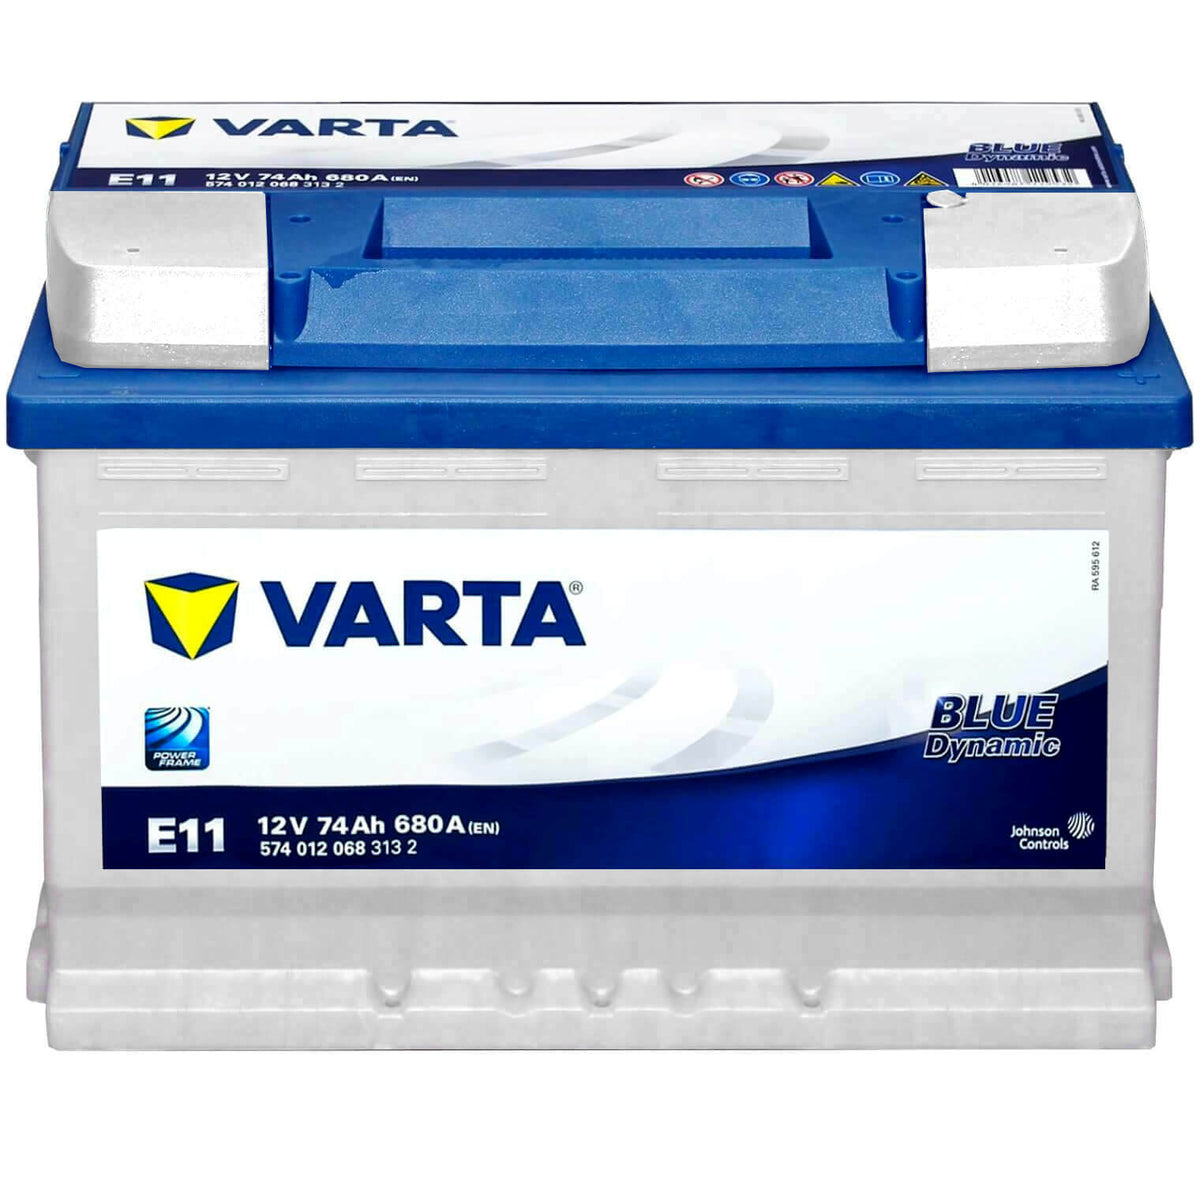 VARTA BLUE dynamic, E12 5740130683132 Batería de arranque 12V 74Ah 680A B13  Batería de plomo y ácido E12, 574013068